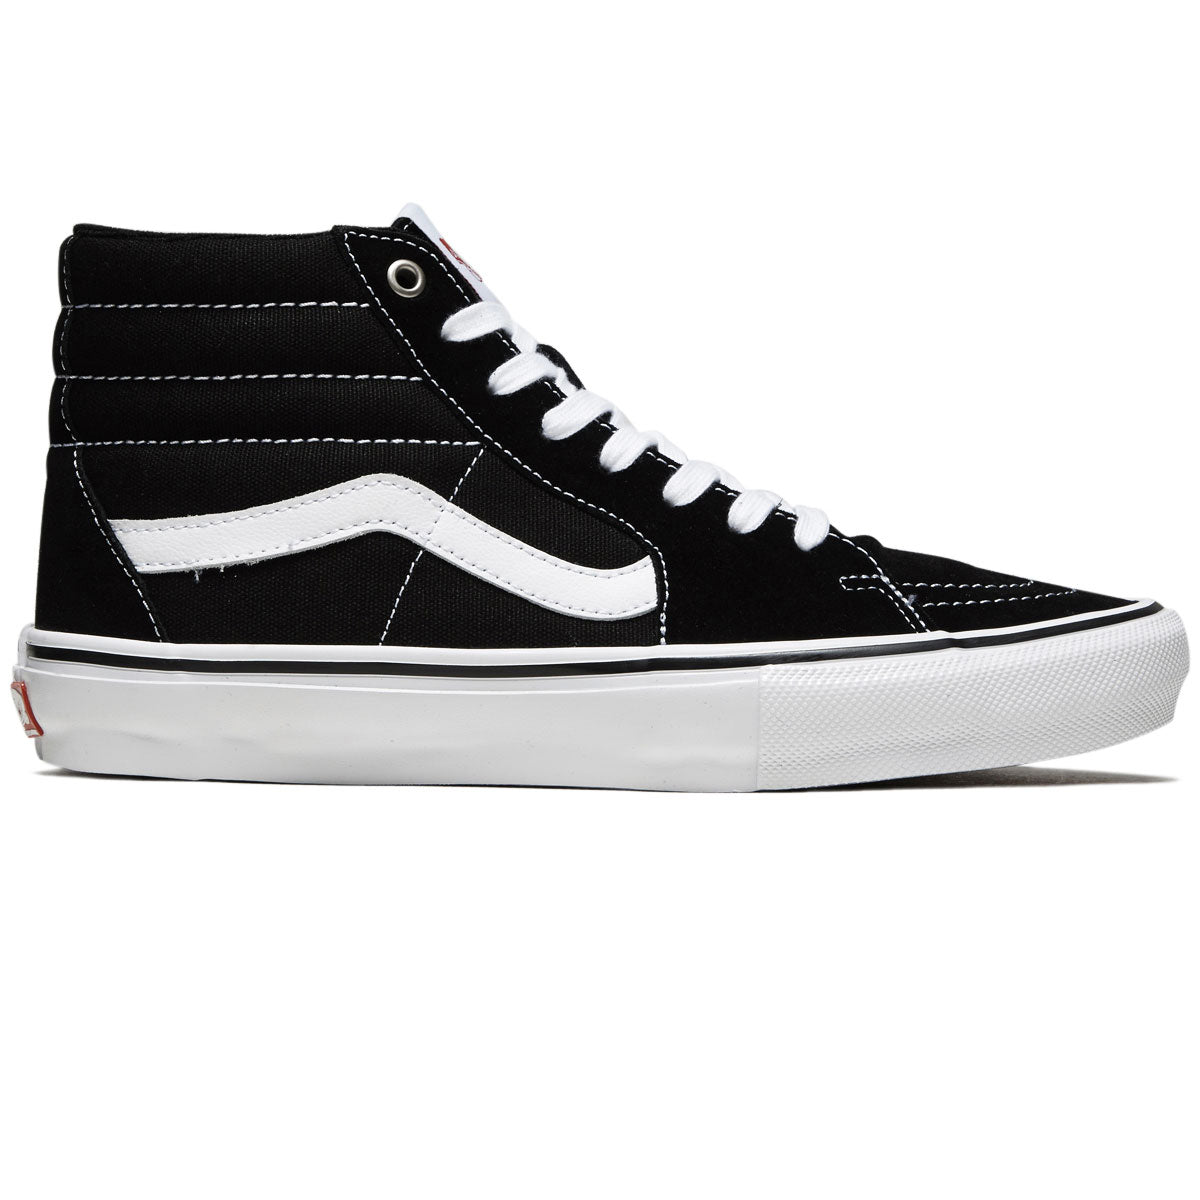 Vans Skate Sk8-hi Shoes - Black/White image 1